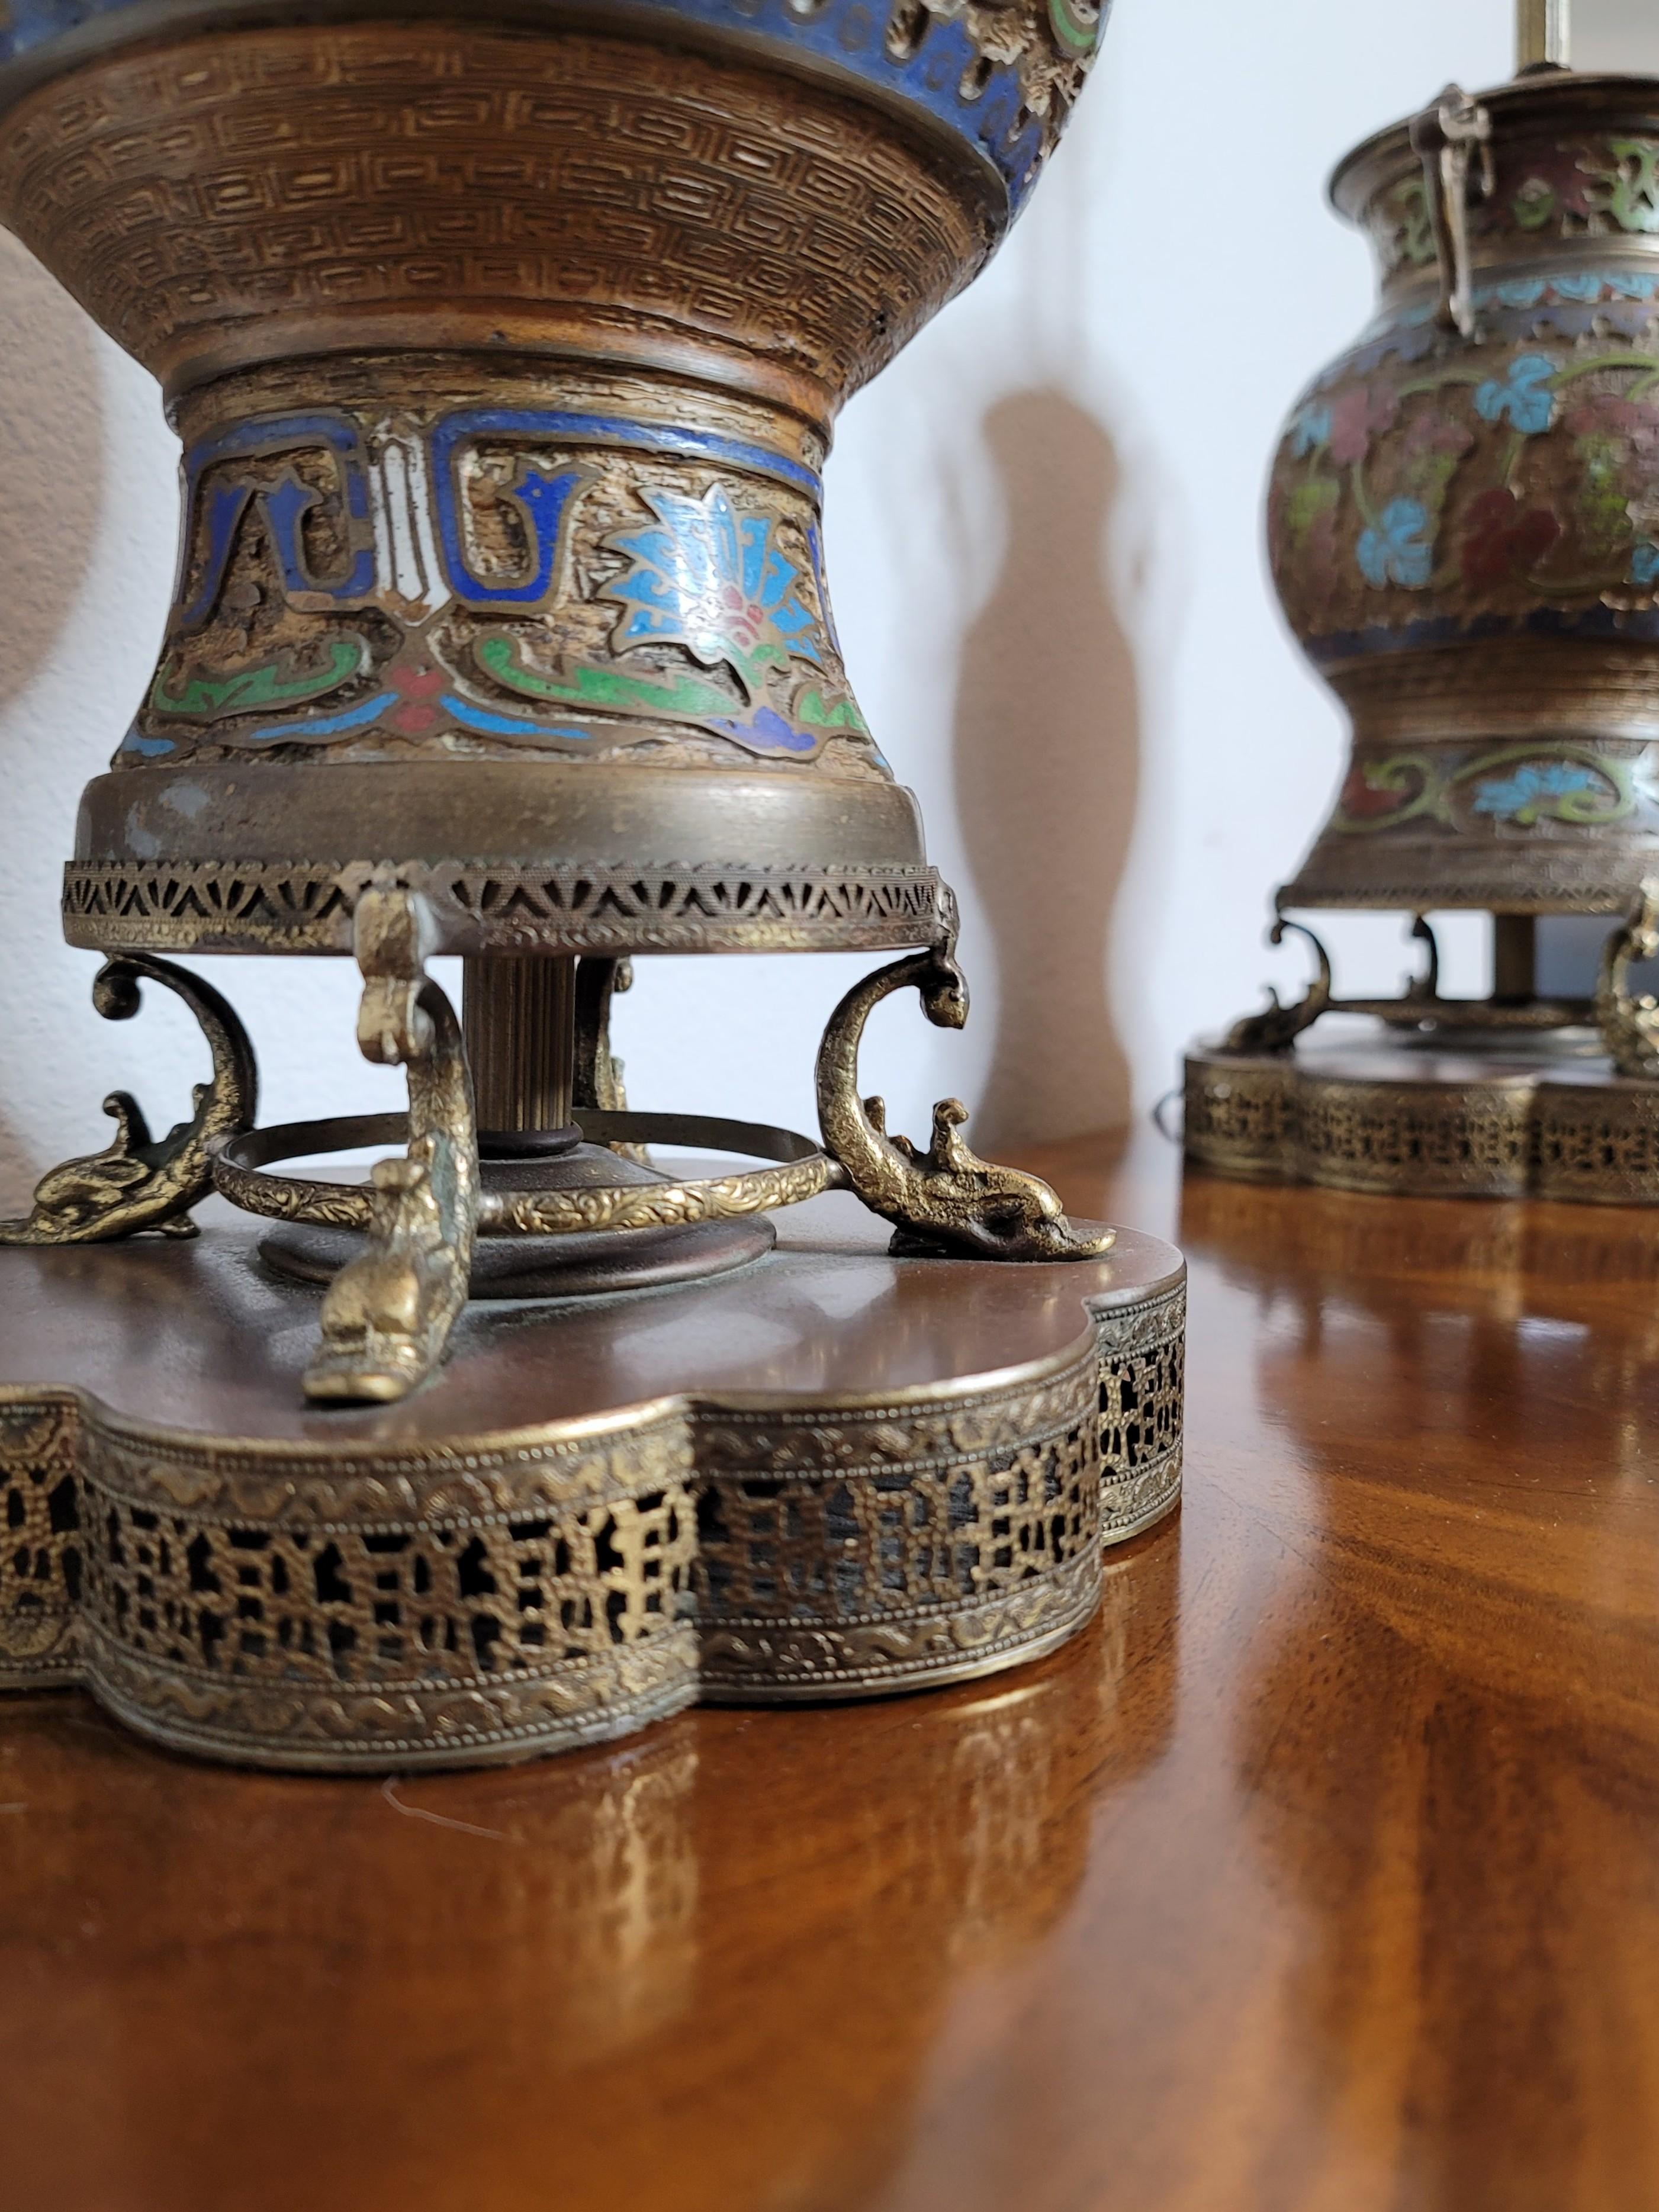 Paire d'urnes asiatiques anciennes en bronze émaillé 